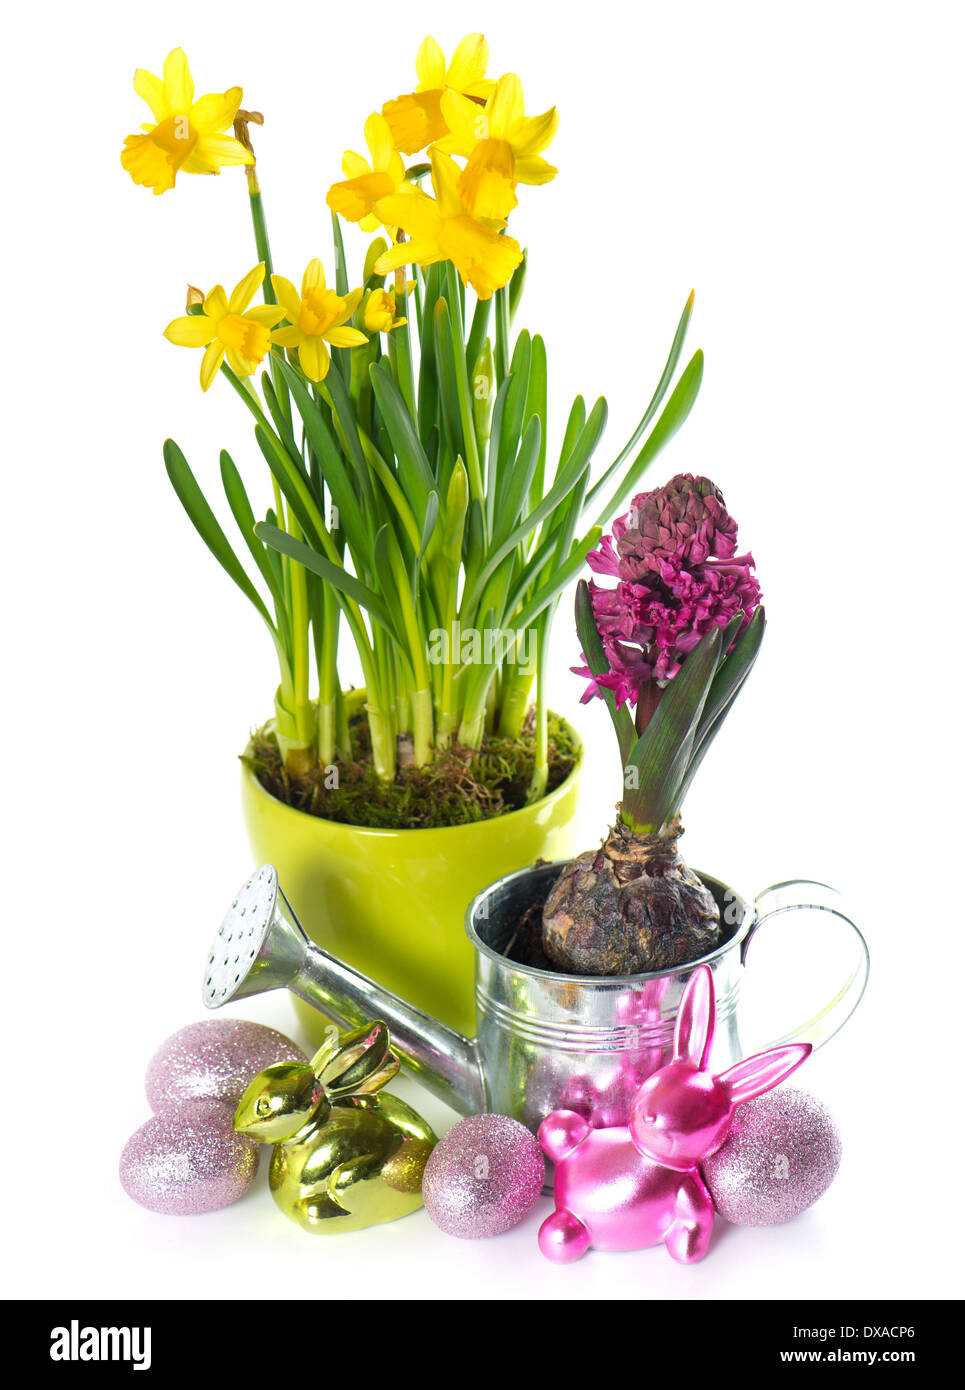 Frühling Blumen Narzissen Hyazinthe mit Ostereiern und Hase Dekoration Stockfoto